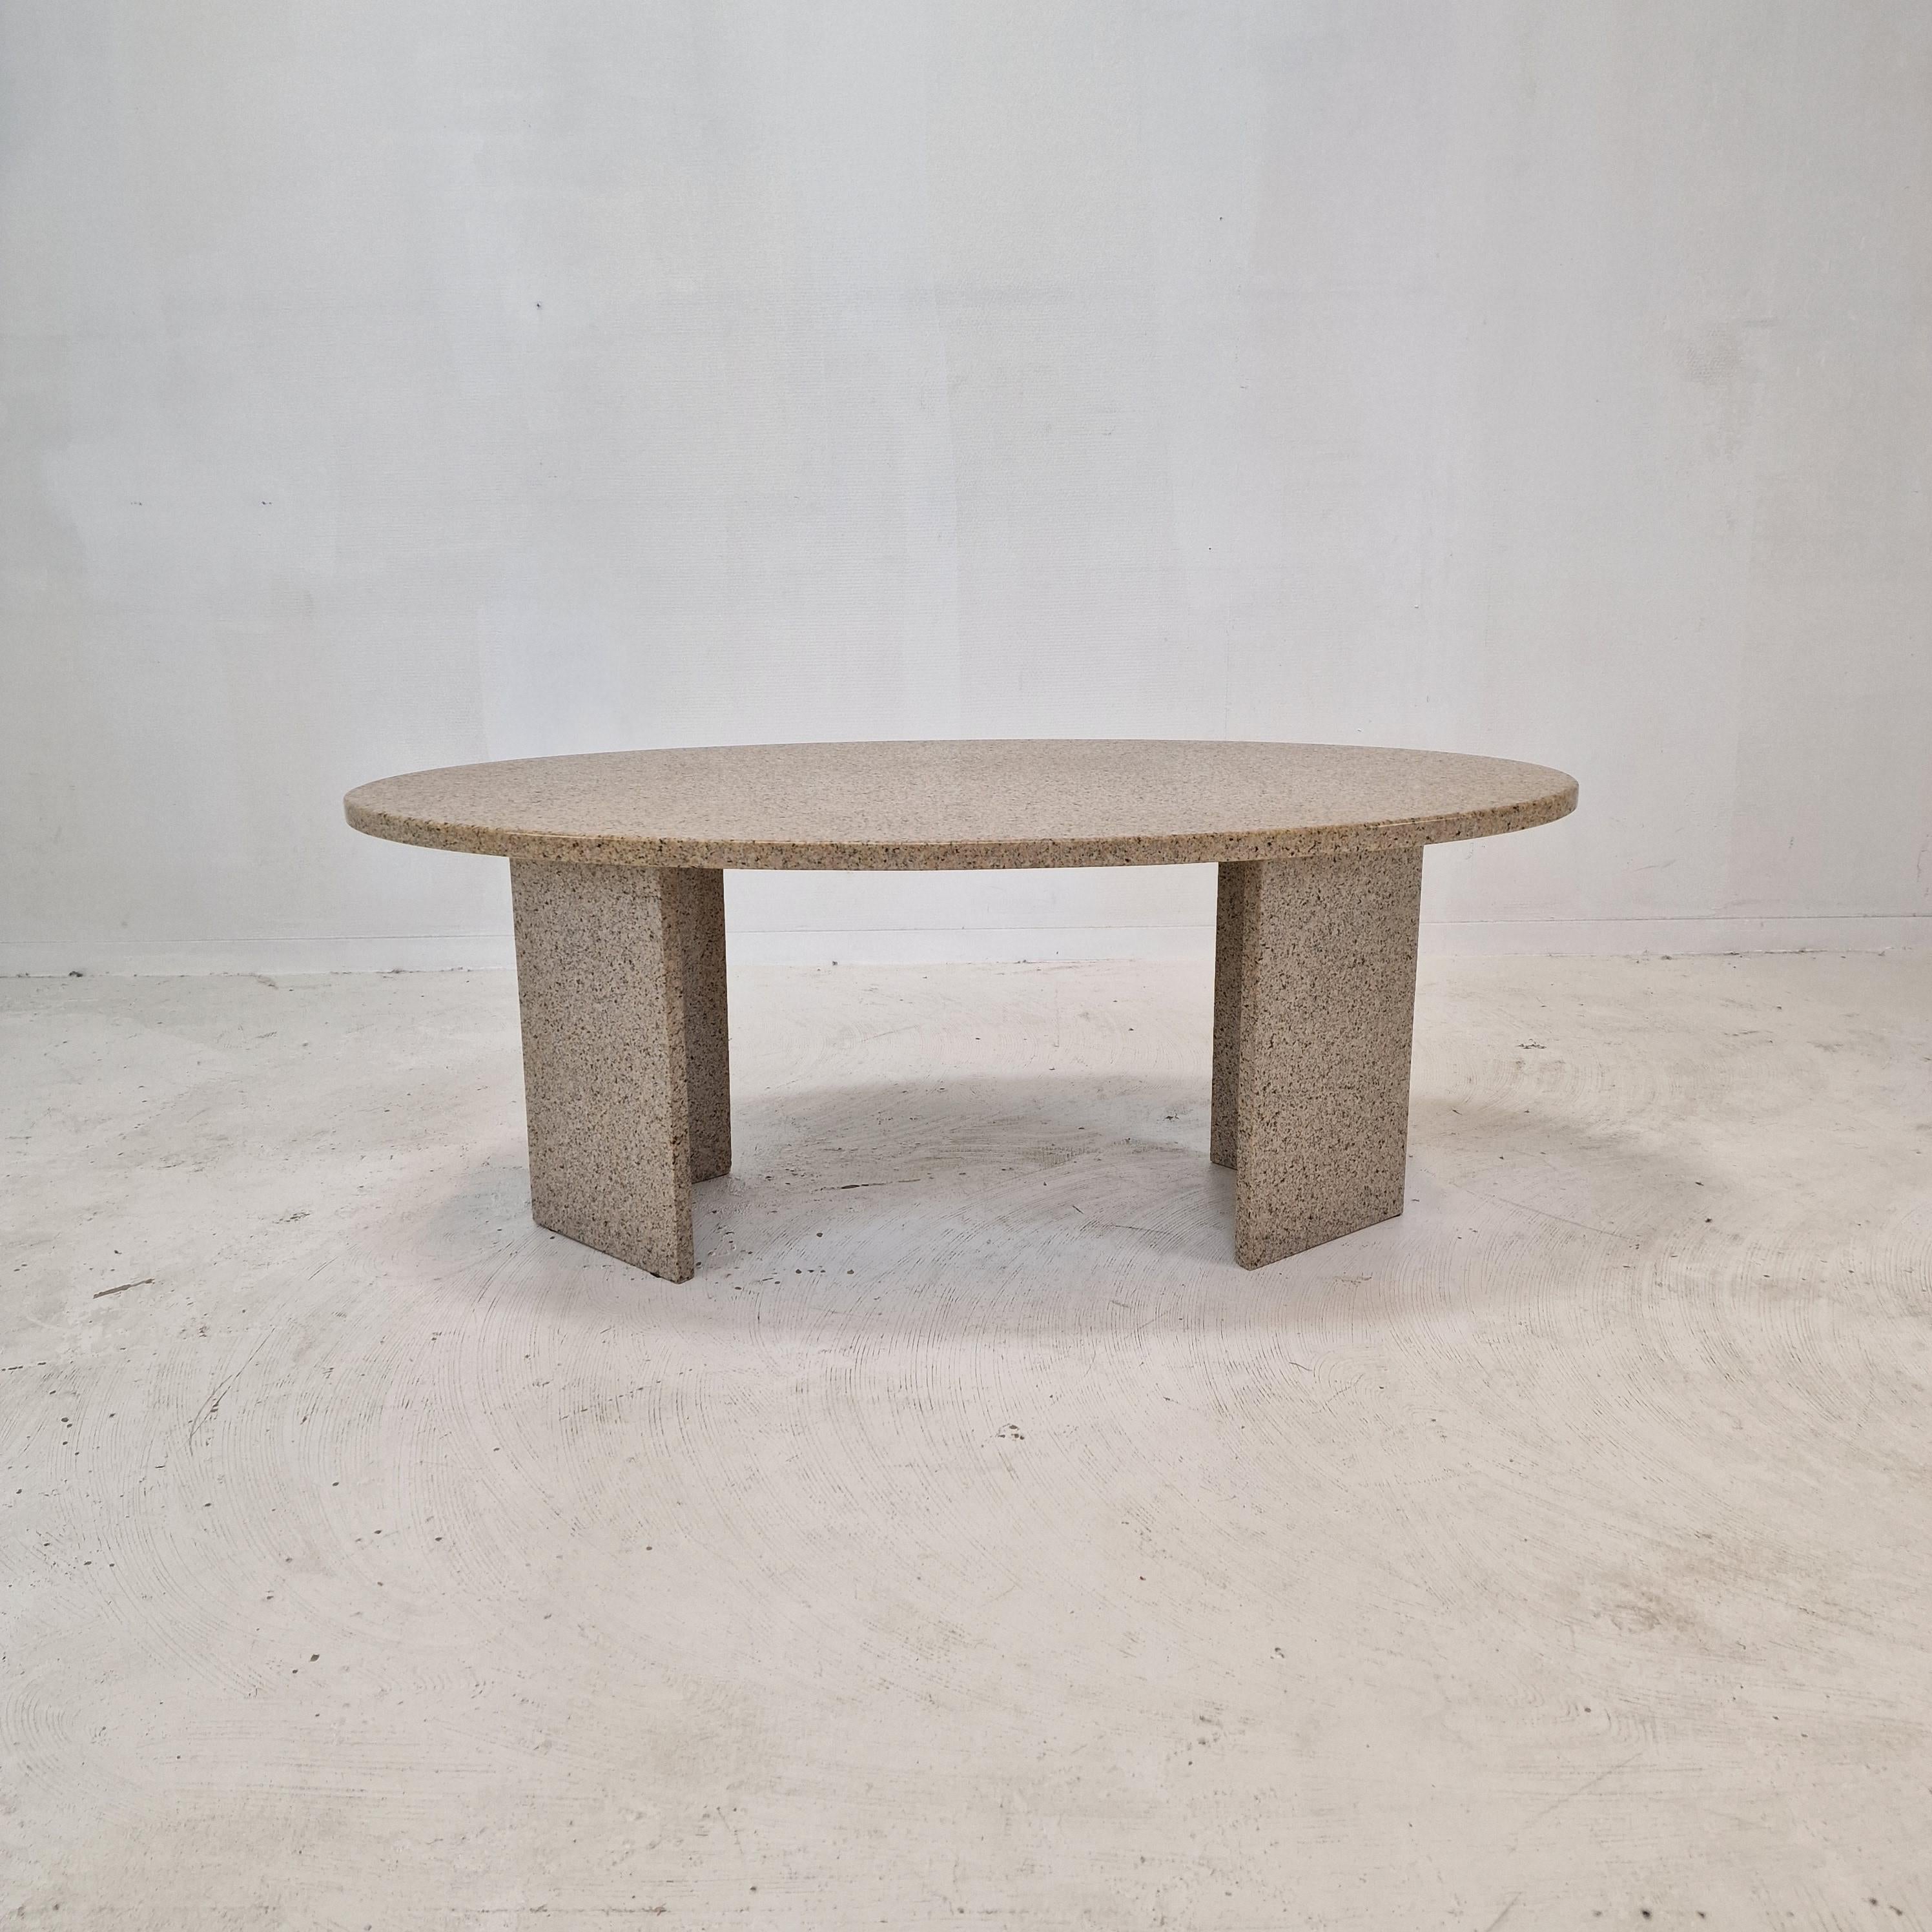 Très belle table basse italienne fabriquée à la main en granit, années 1980.

Cette table ovale est fabriquée en granit.
Veuillez prendre note des très beaux motifs.
Il est possible de varier la position des deux jambes.

La table est en très bon